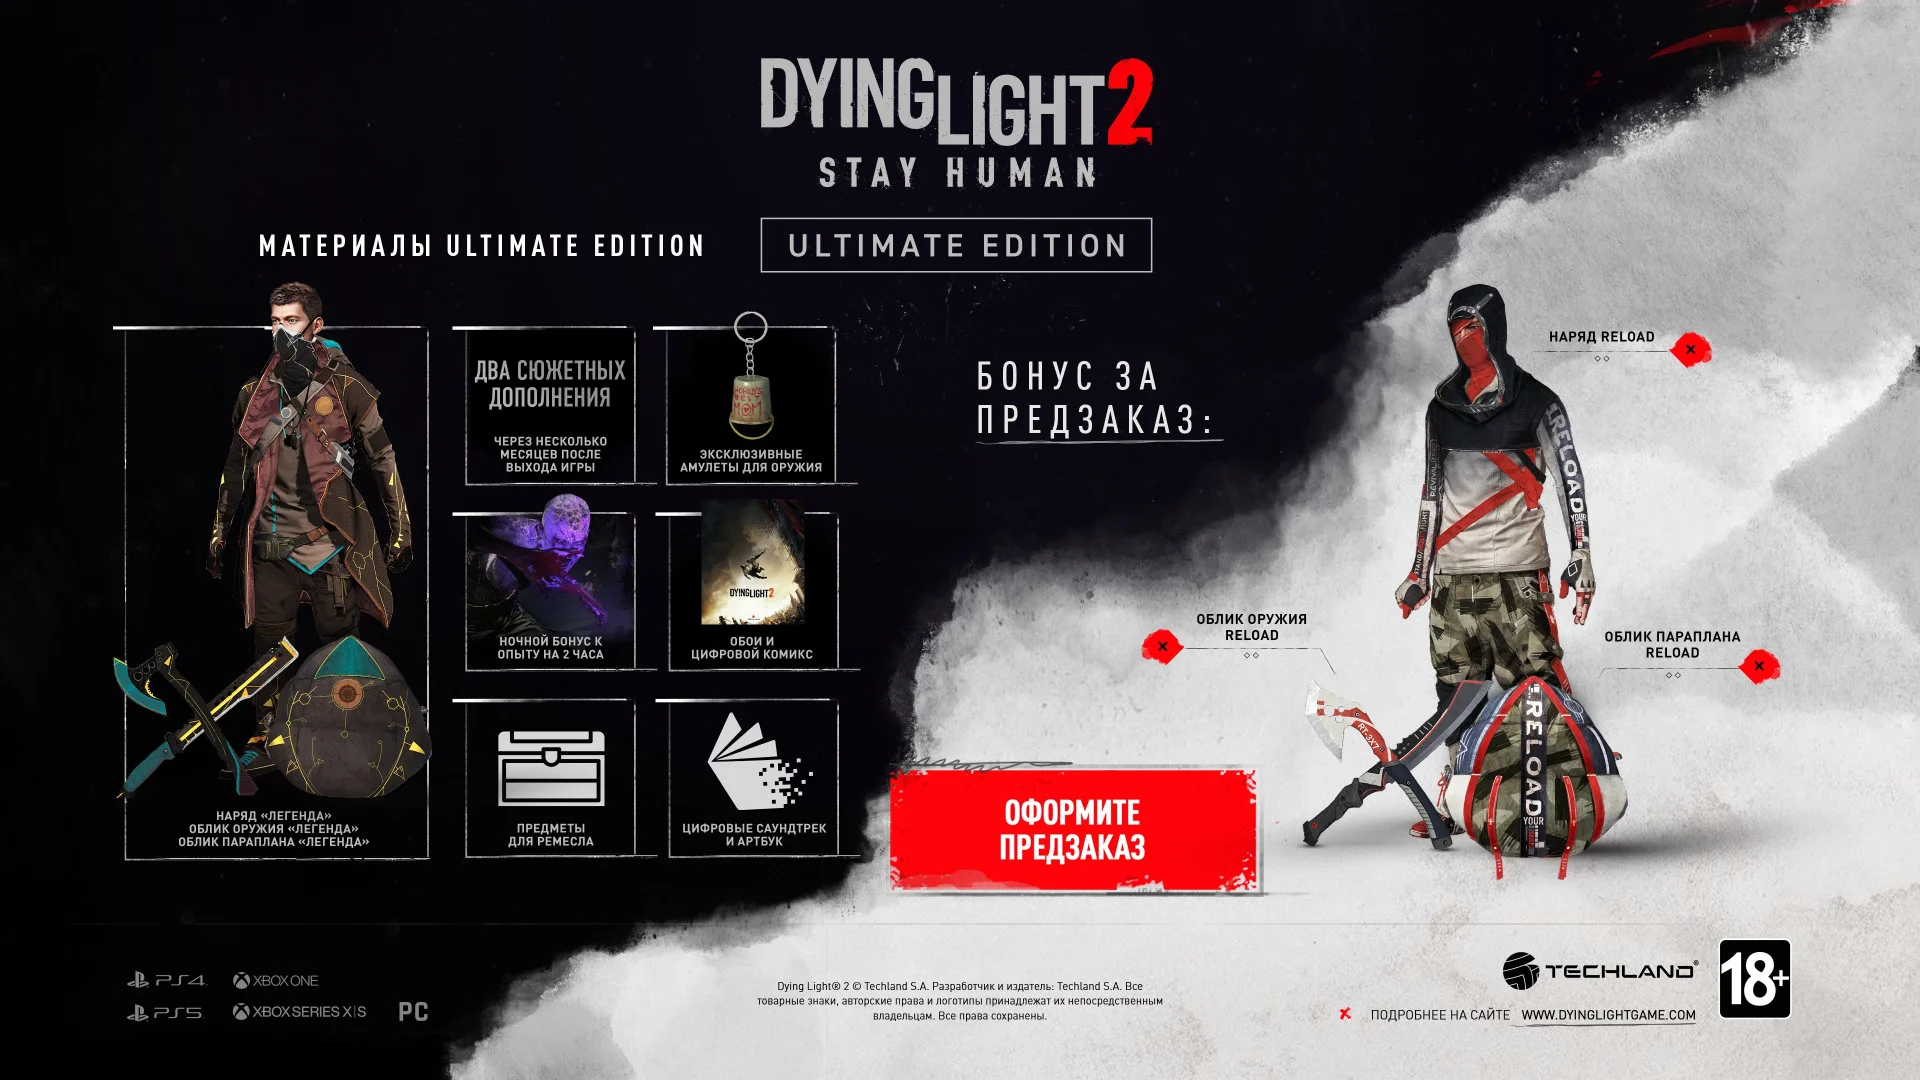 Цены, разные издания, коллекционка и предзаказы Dying Light 2 - фото 4